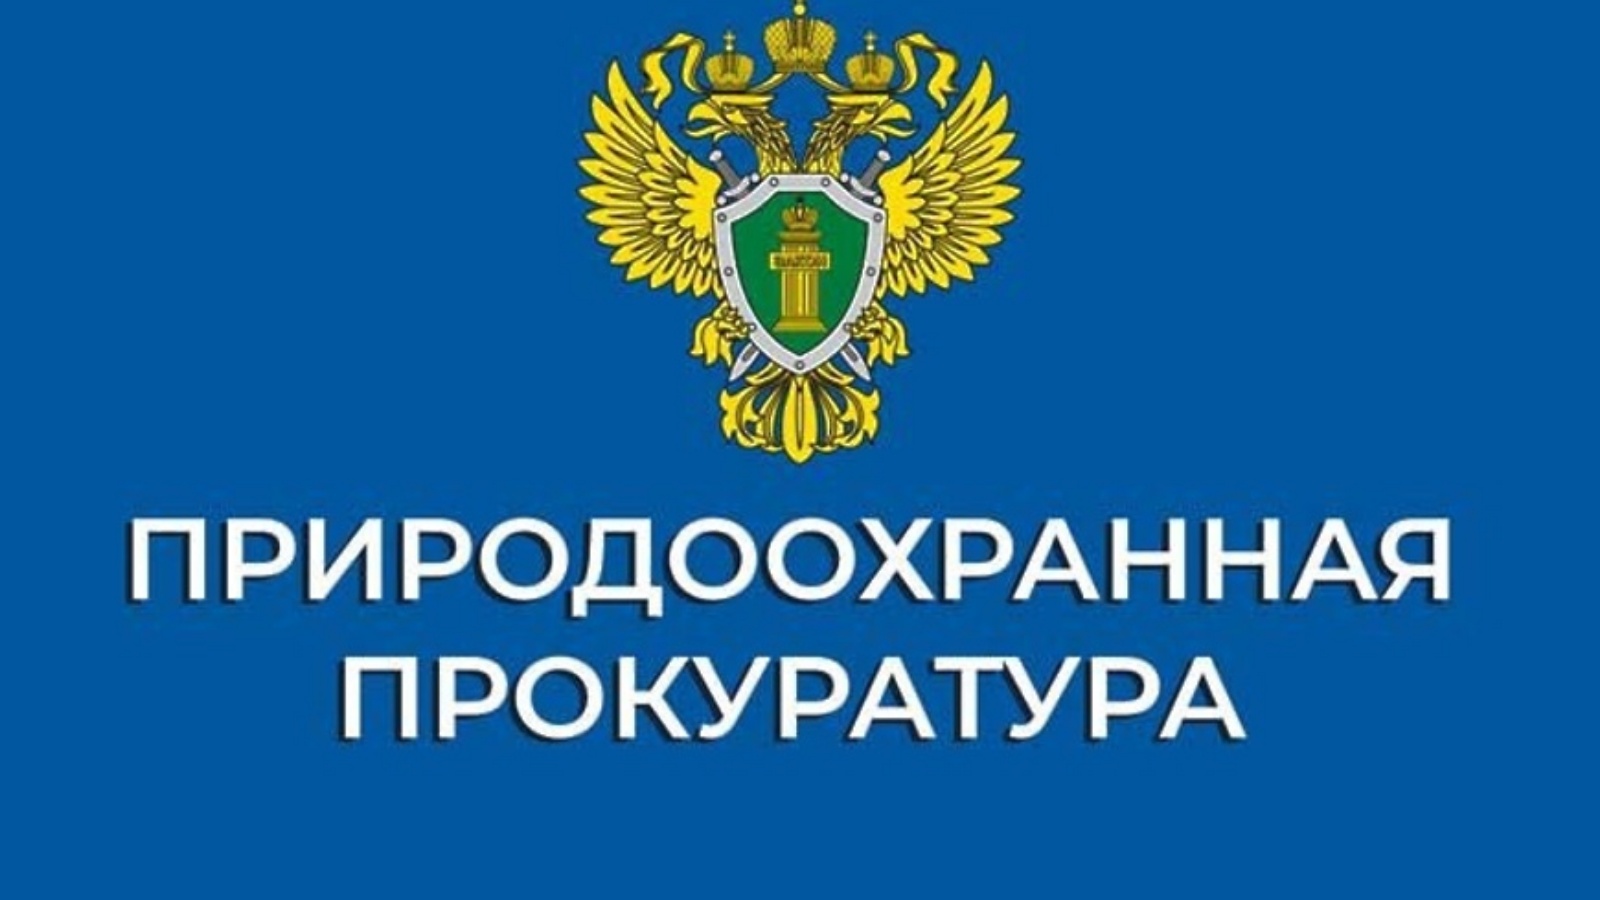 Владивостокская межрайонная природоохранная прокуратура информирует.